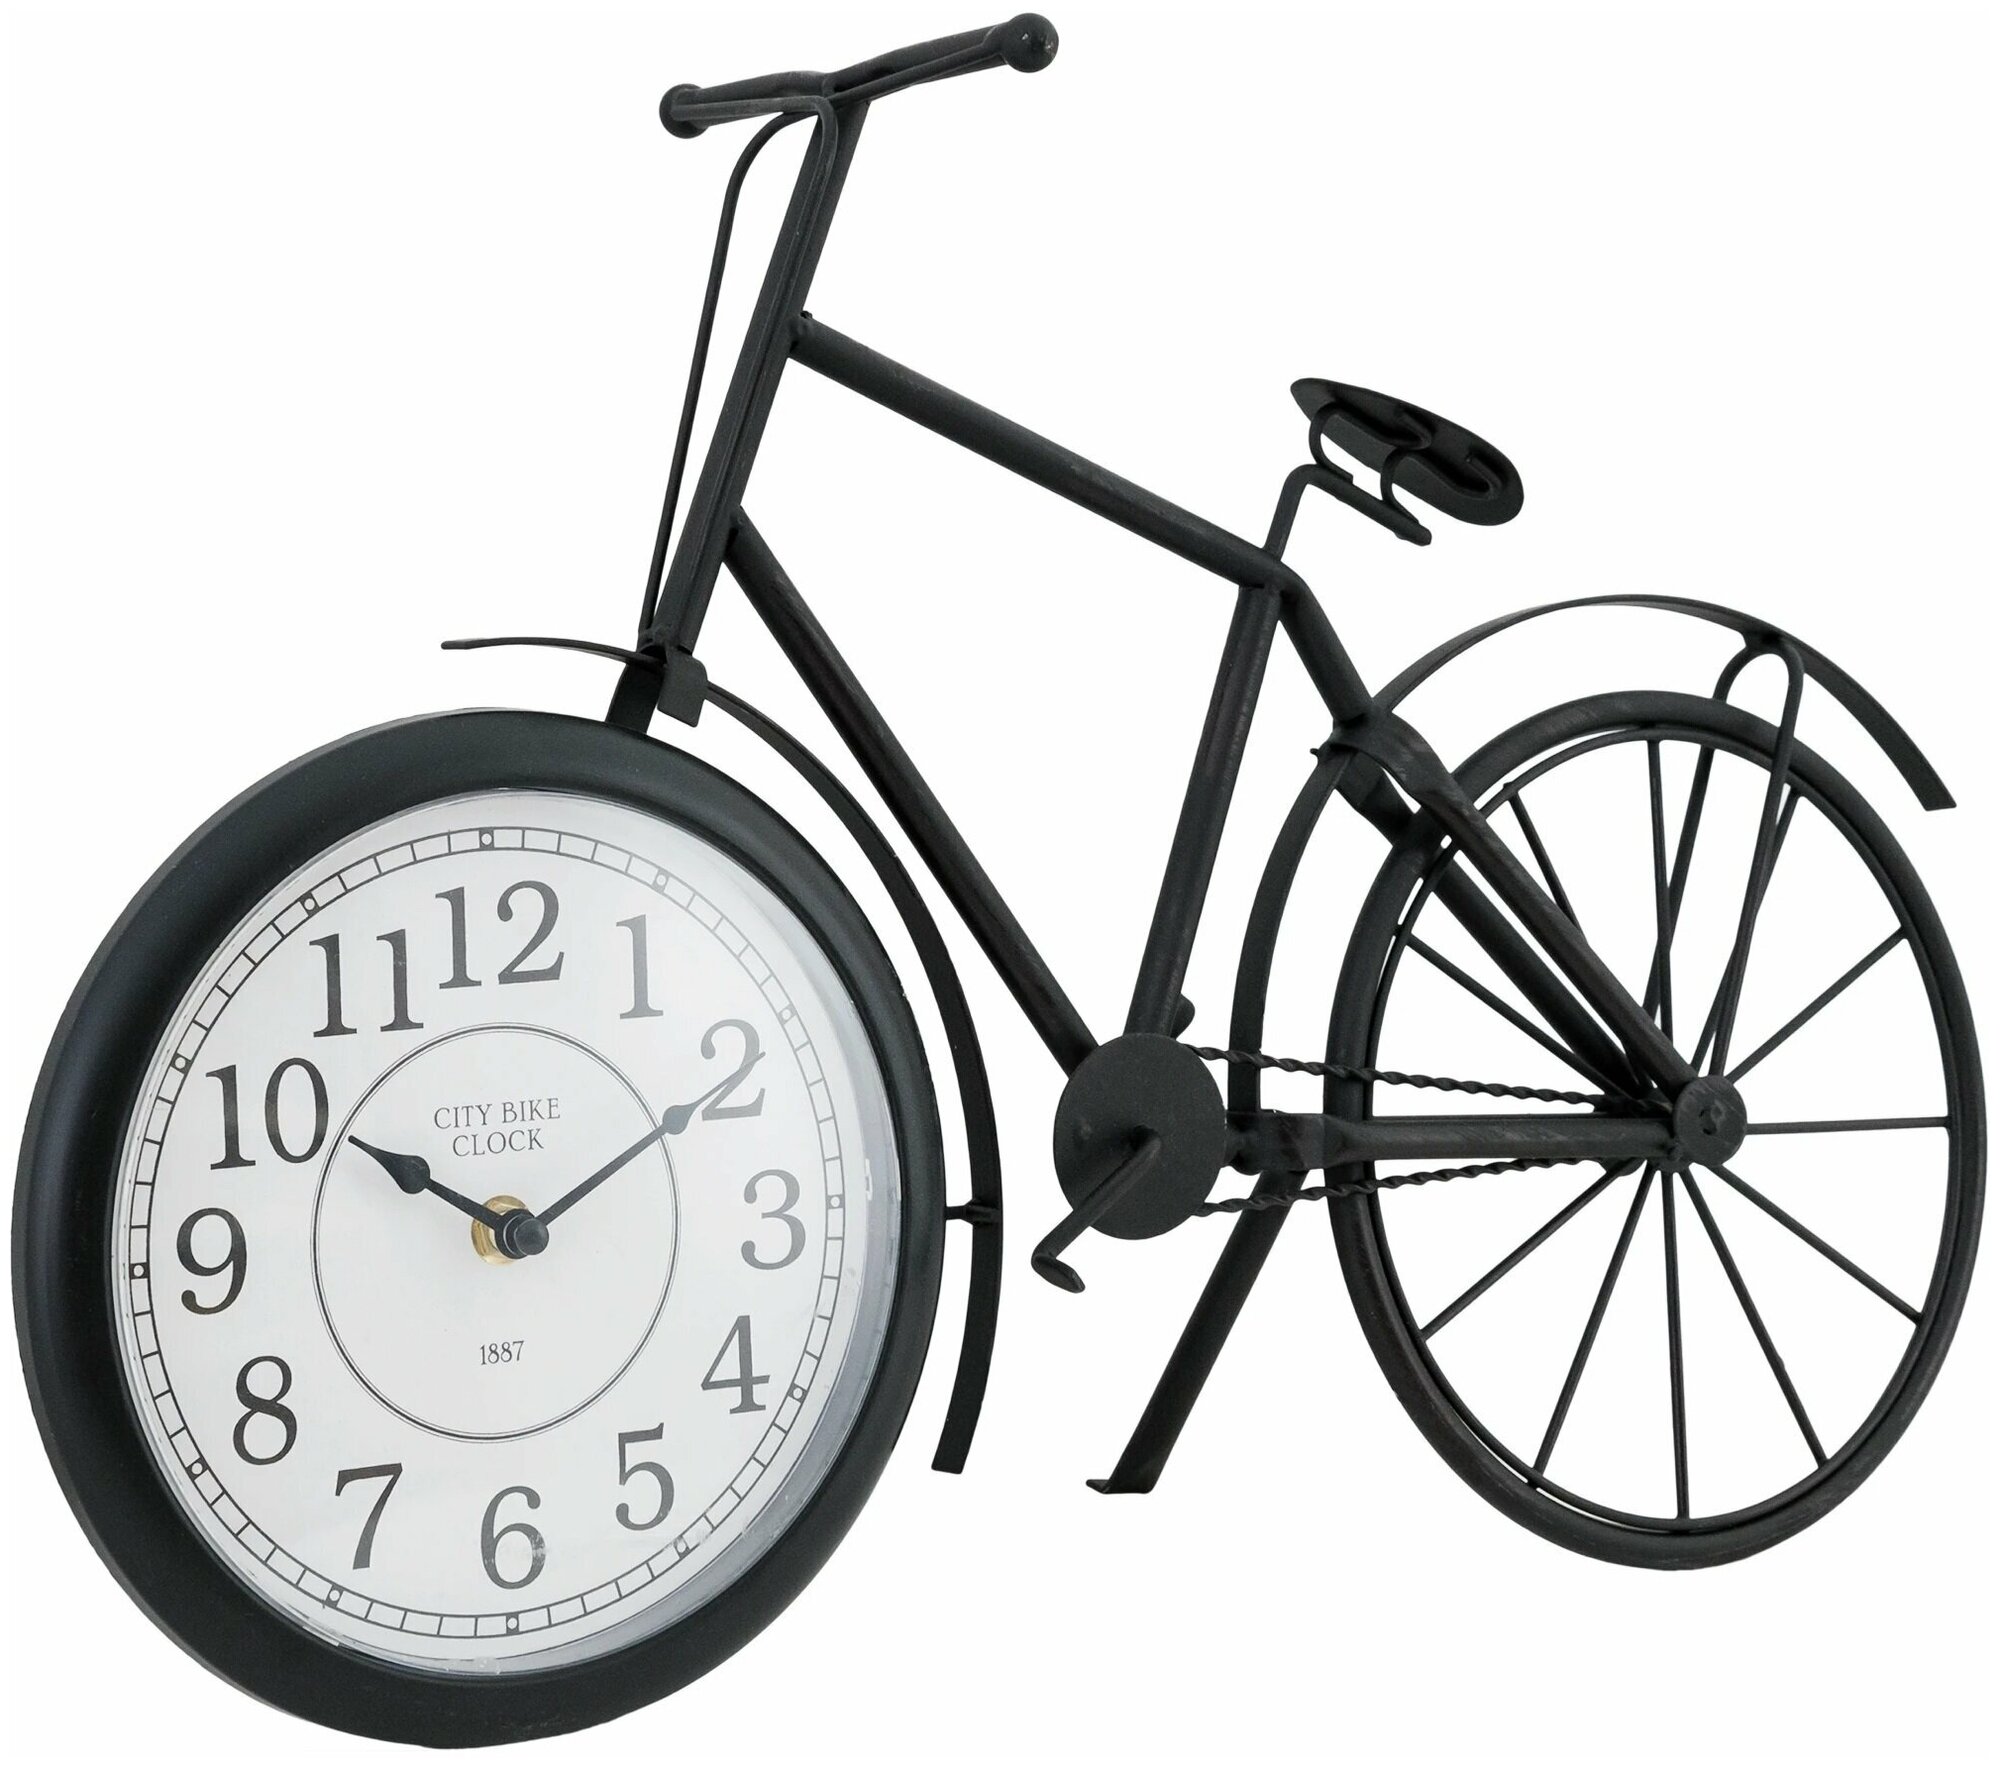 Часы настольные "Велосипед" 52х13х21 см, надежный металл, AA, цвет чёрный, оригинальный и стильный дизайн. Часы привнесут романтику, европейский колор